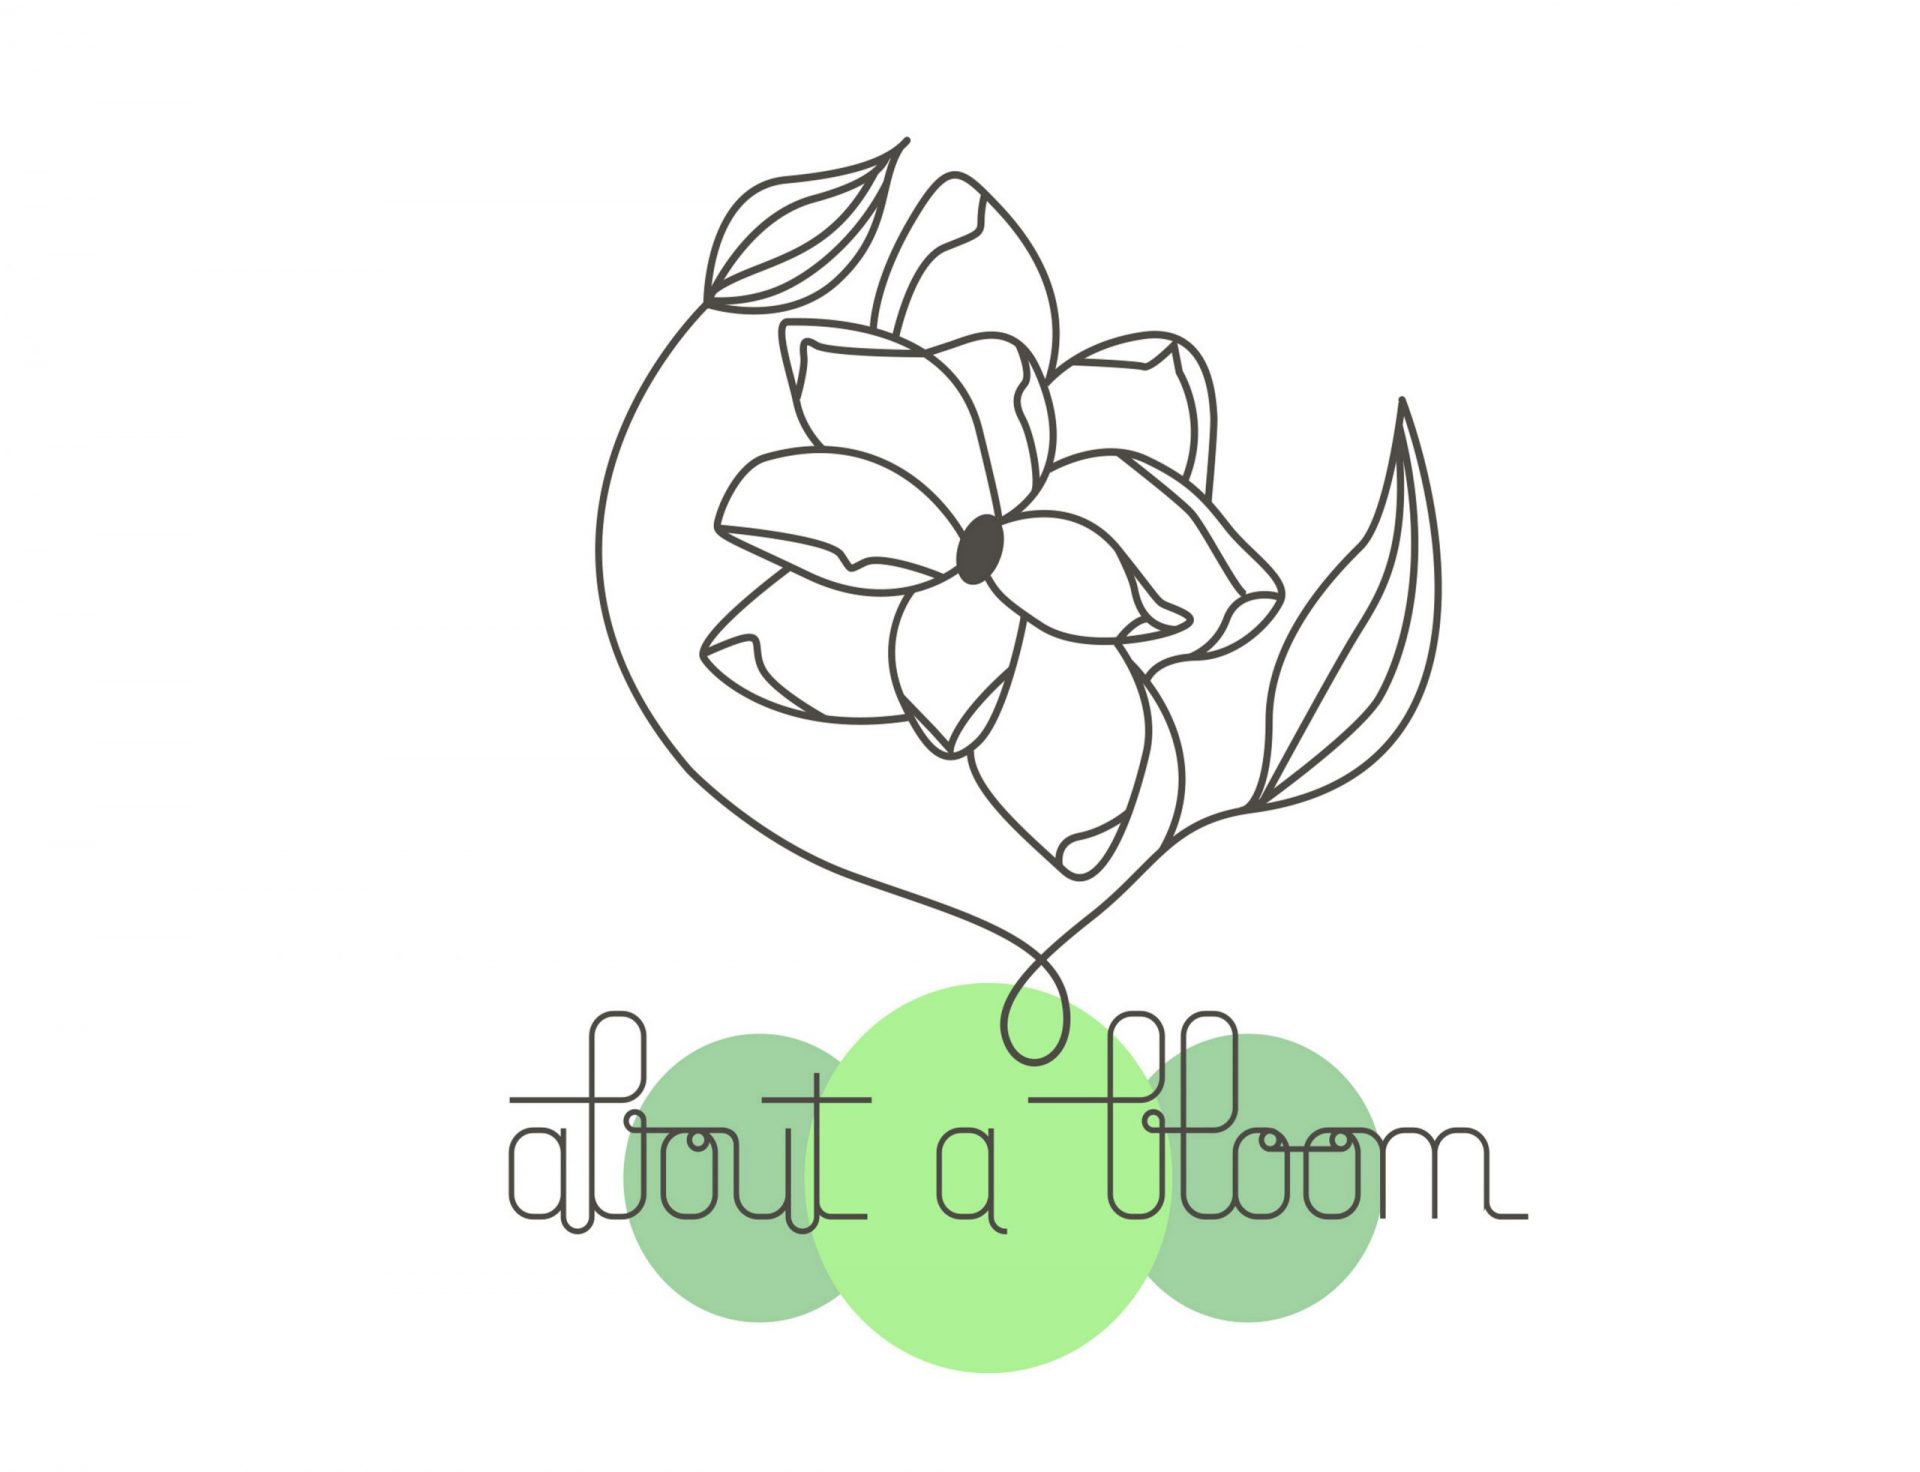 logo avec une fleur en contours gris, 3cercles de couleurs vertes en dessous